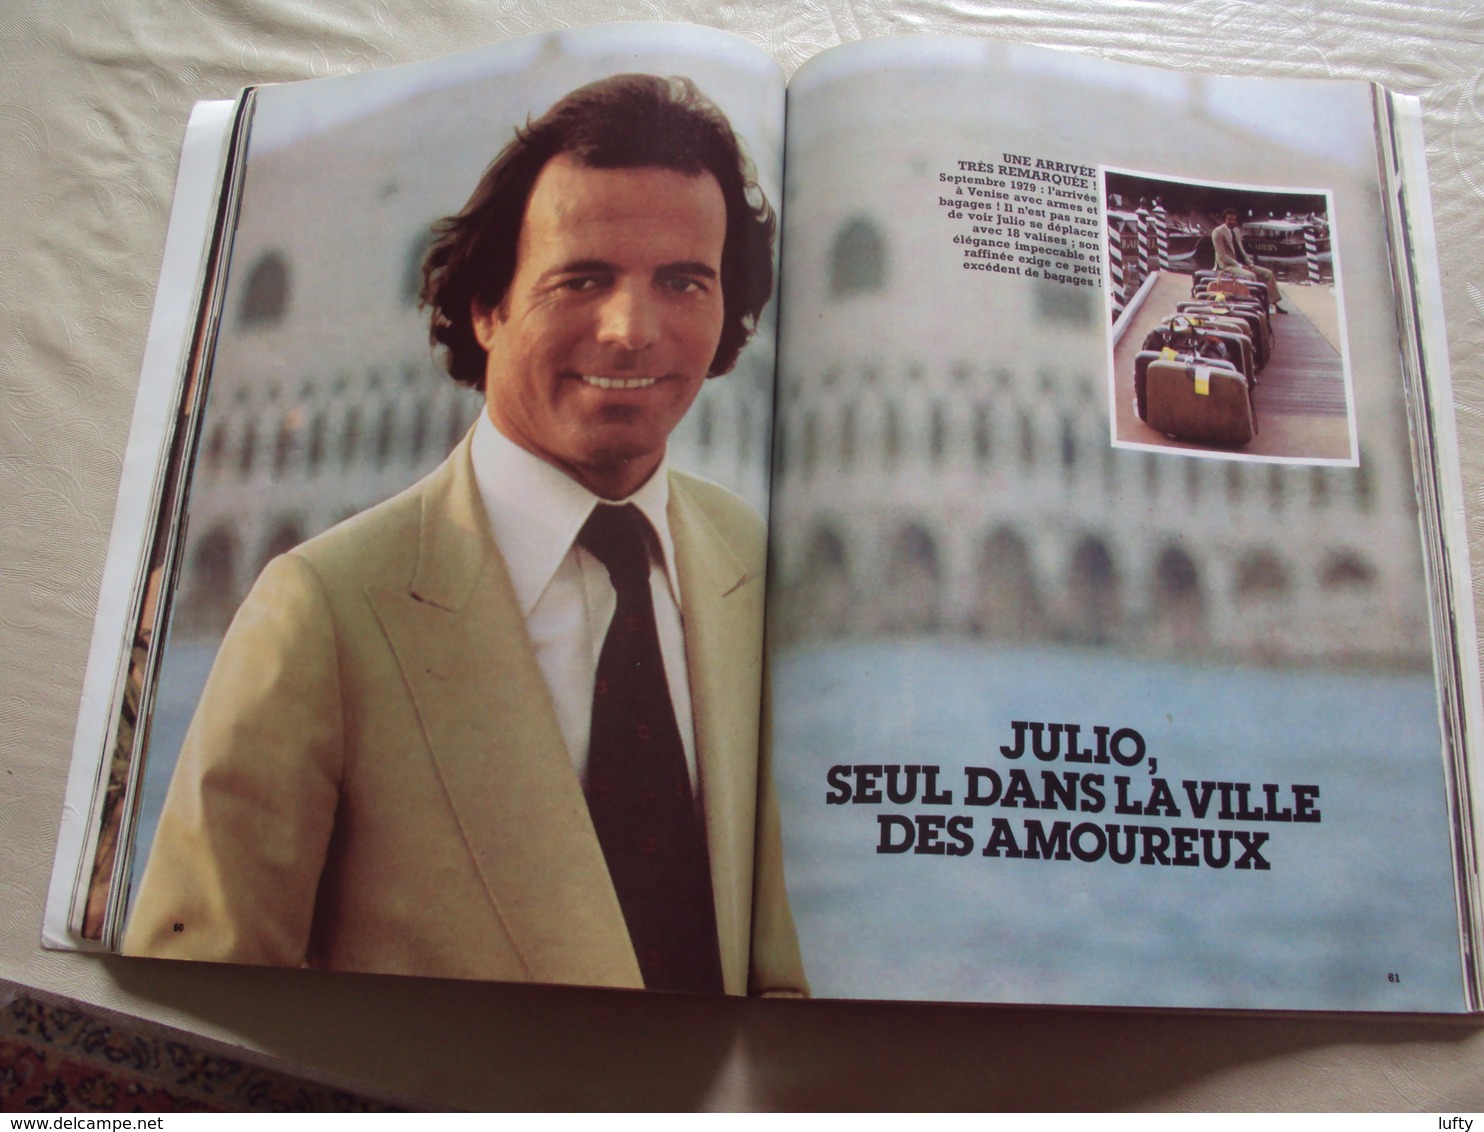 livre "C'est ma vie" JULIO IGLESIAS par Jésus Villanueva - Sylvie Vartan - Sheila - Dalida - Mireille Mathieu - 1981